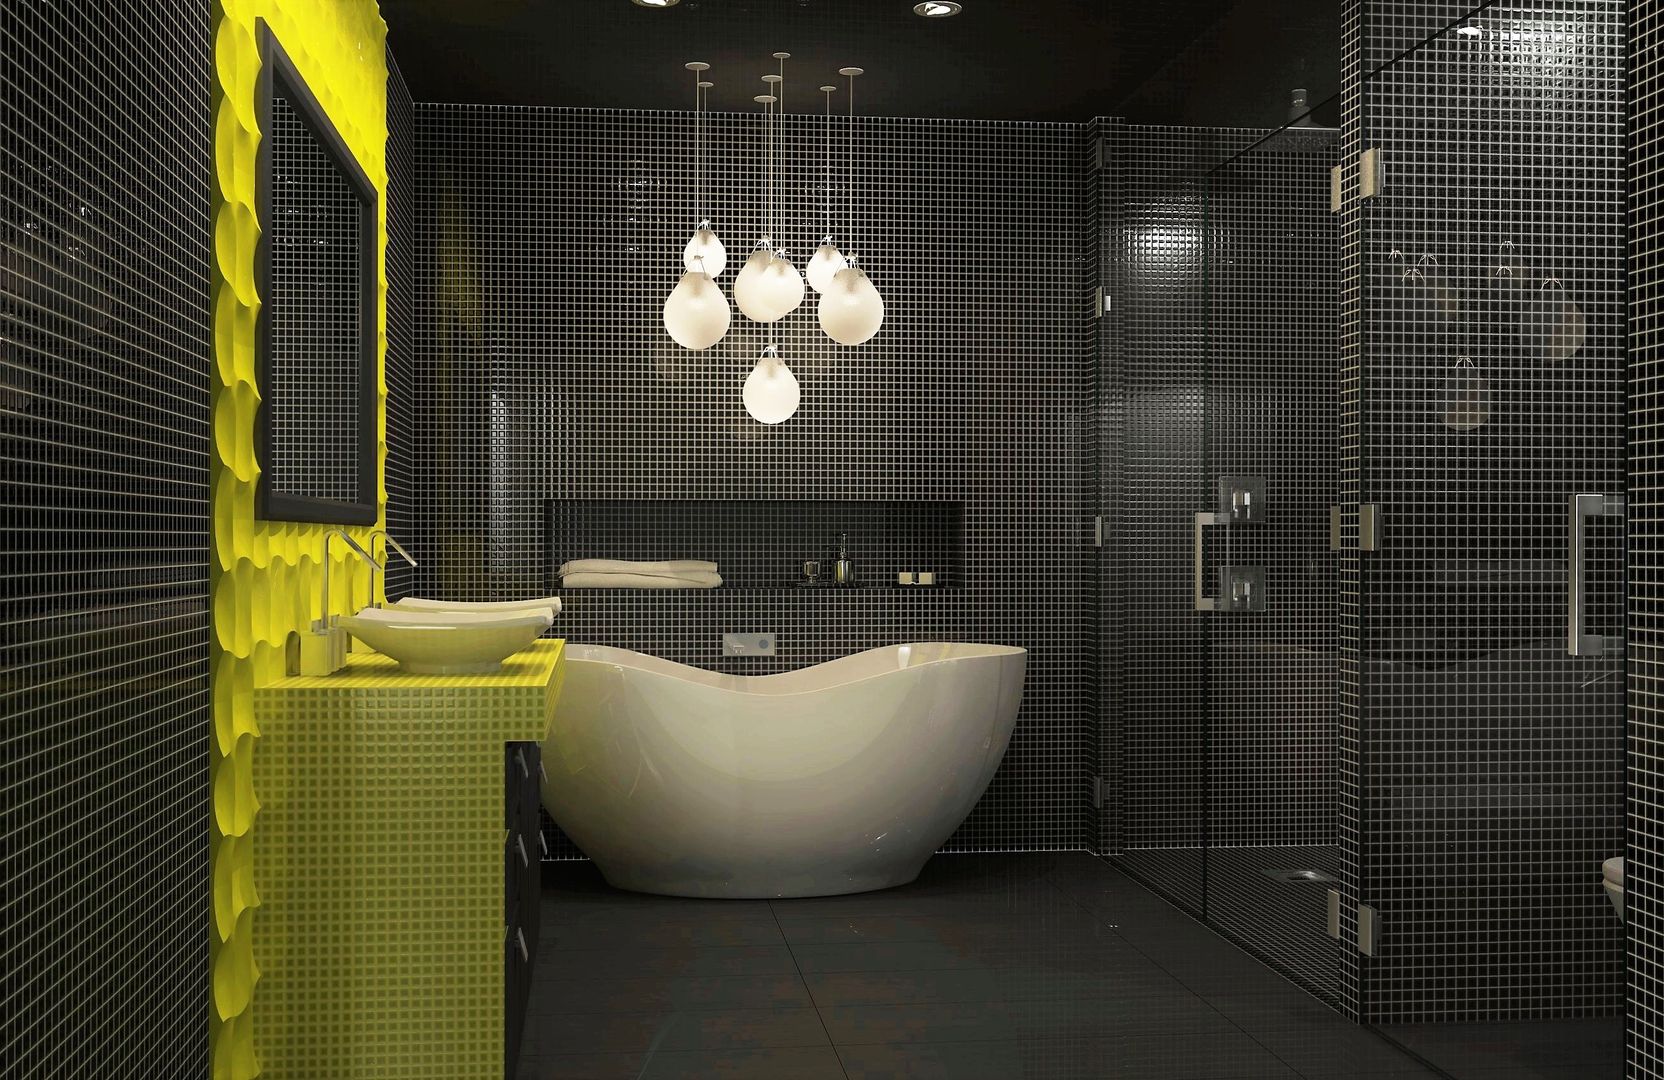 Bathroom interior design Lena Lobiv Interior Design Casas de banho modernas interior,interiordesign,bathroom,mosaic tile,bright colours,homedecor